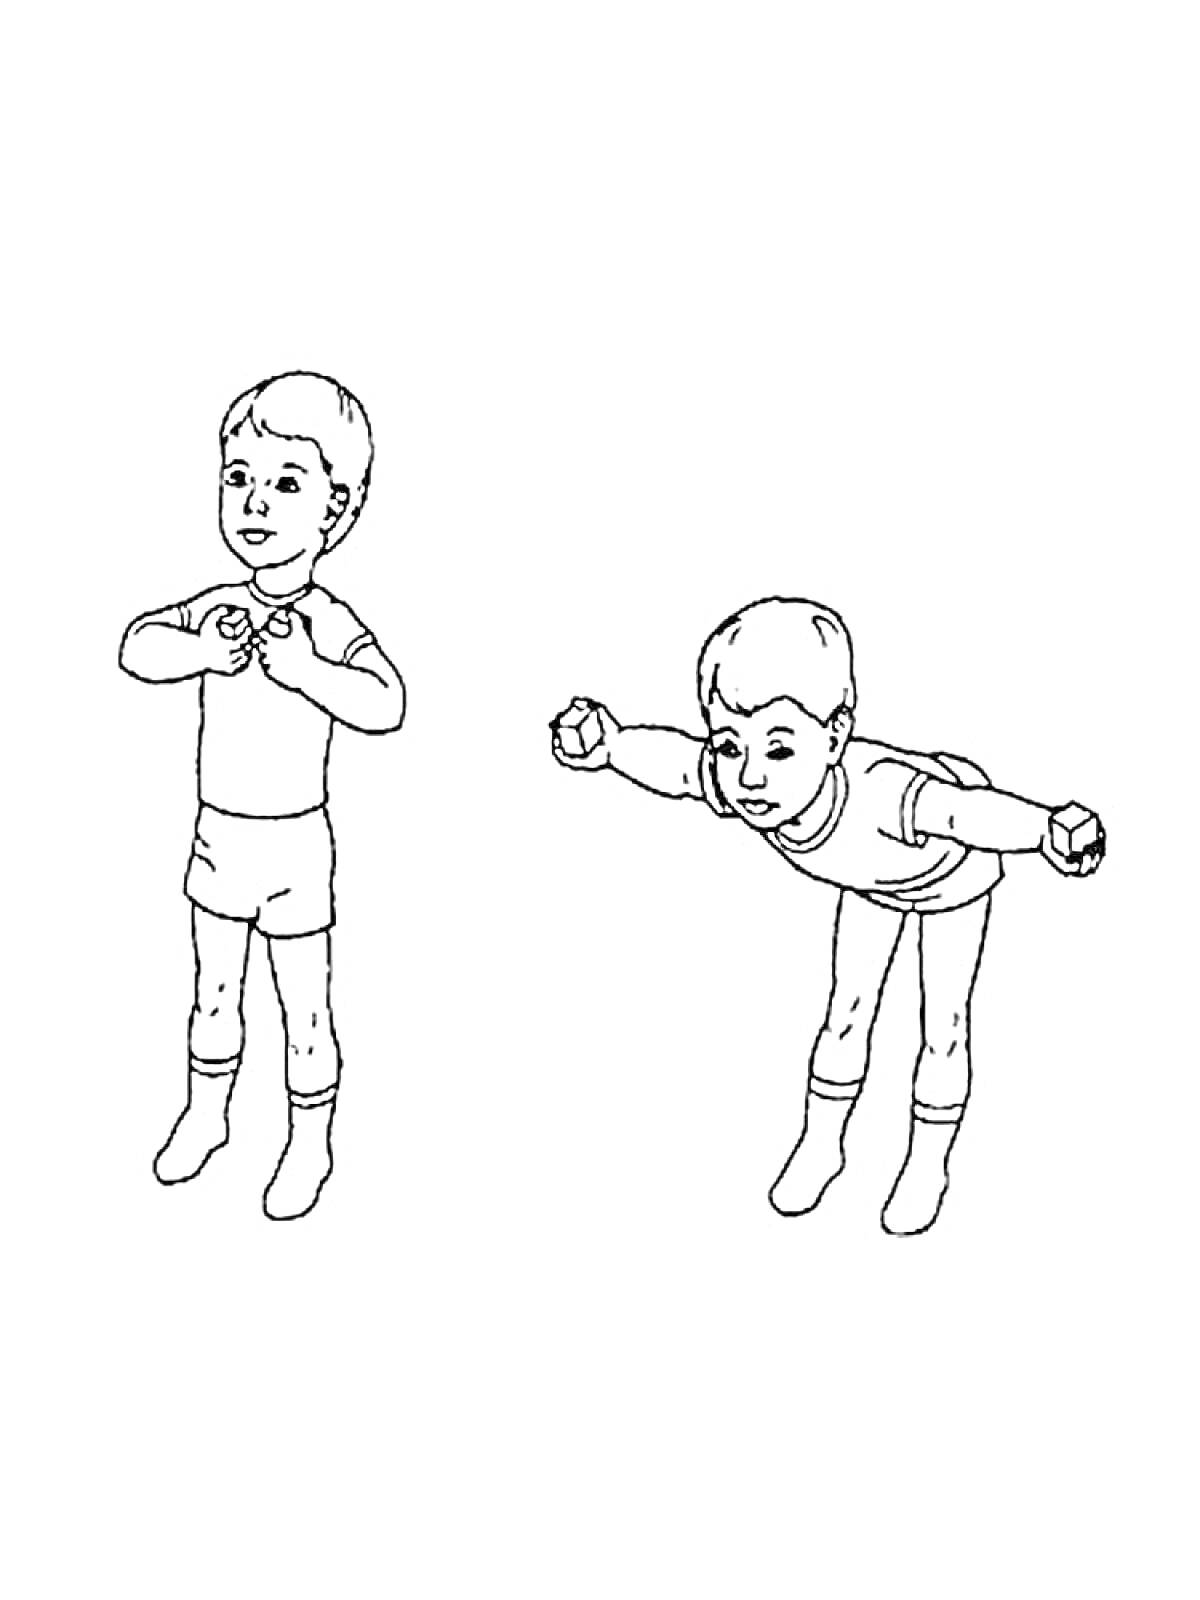 Раскраска Мальчик с гантелями делает упражнения